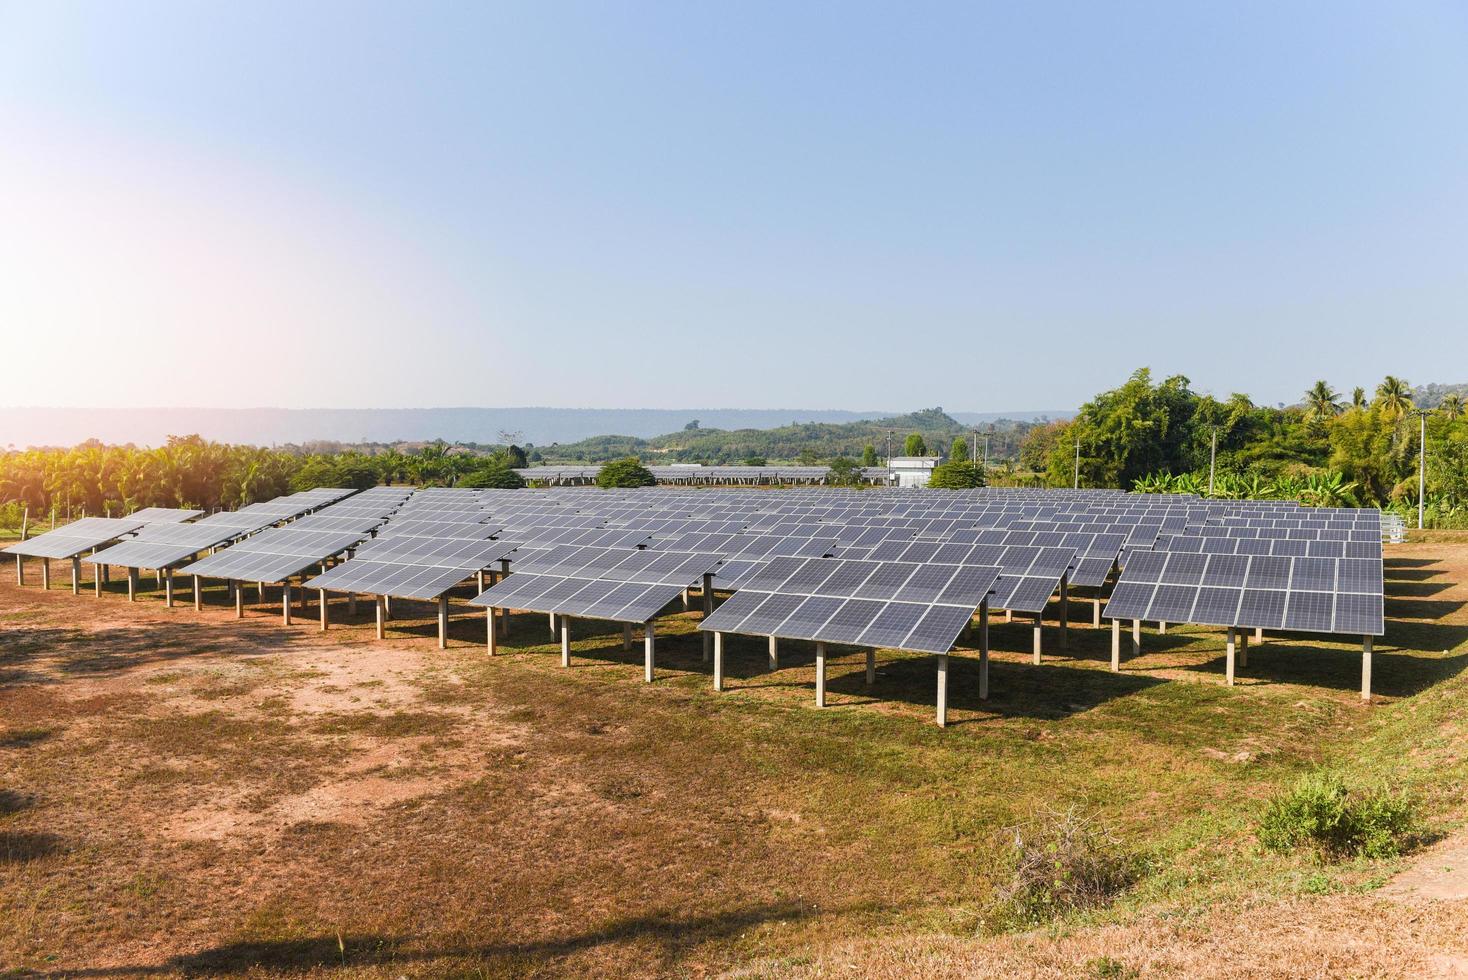 Sonnenkollektoren im Solarpark mit grünem Baum und Sonnenlicht reflektieren - Solarzellenenergie oder erneuerbares Energiekonzept foto